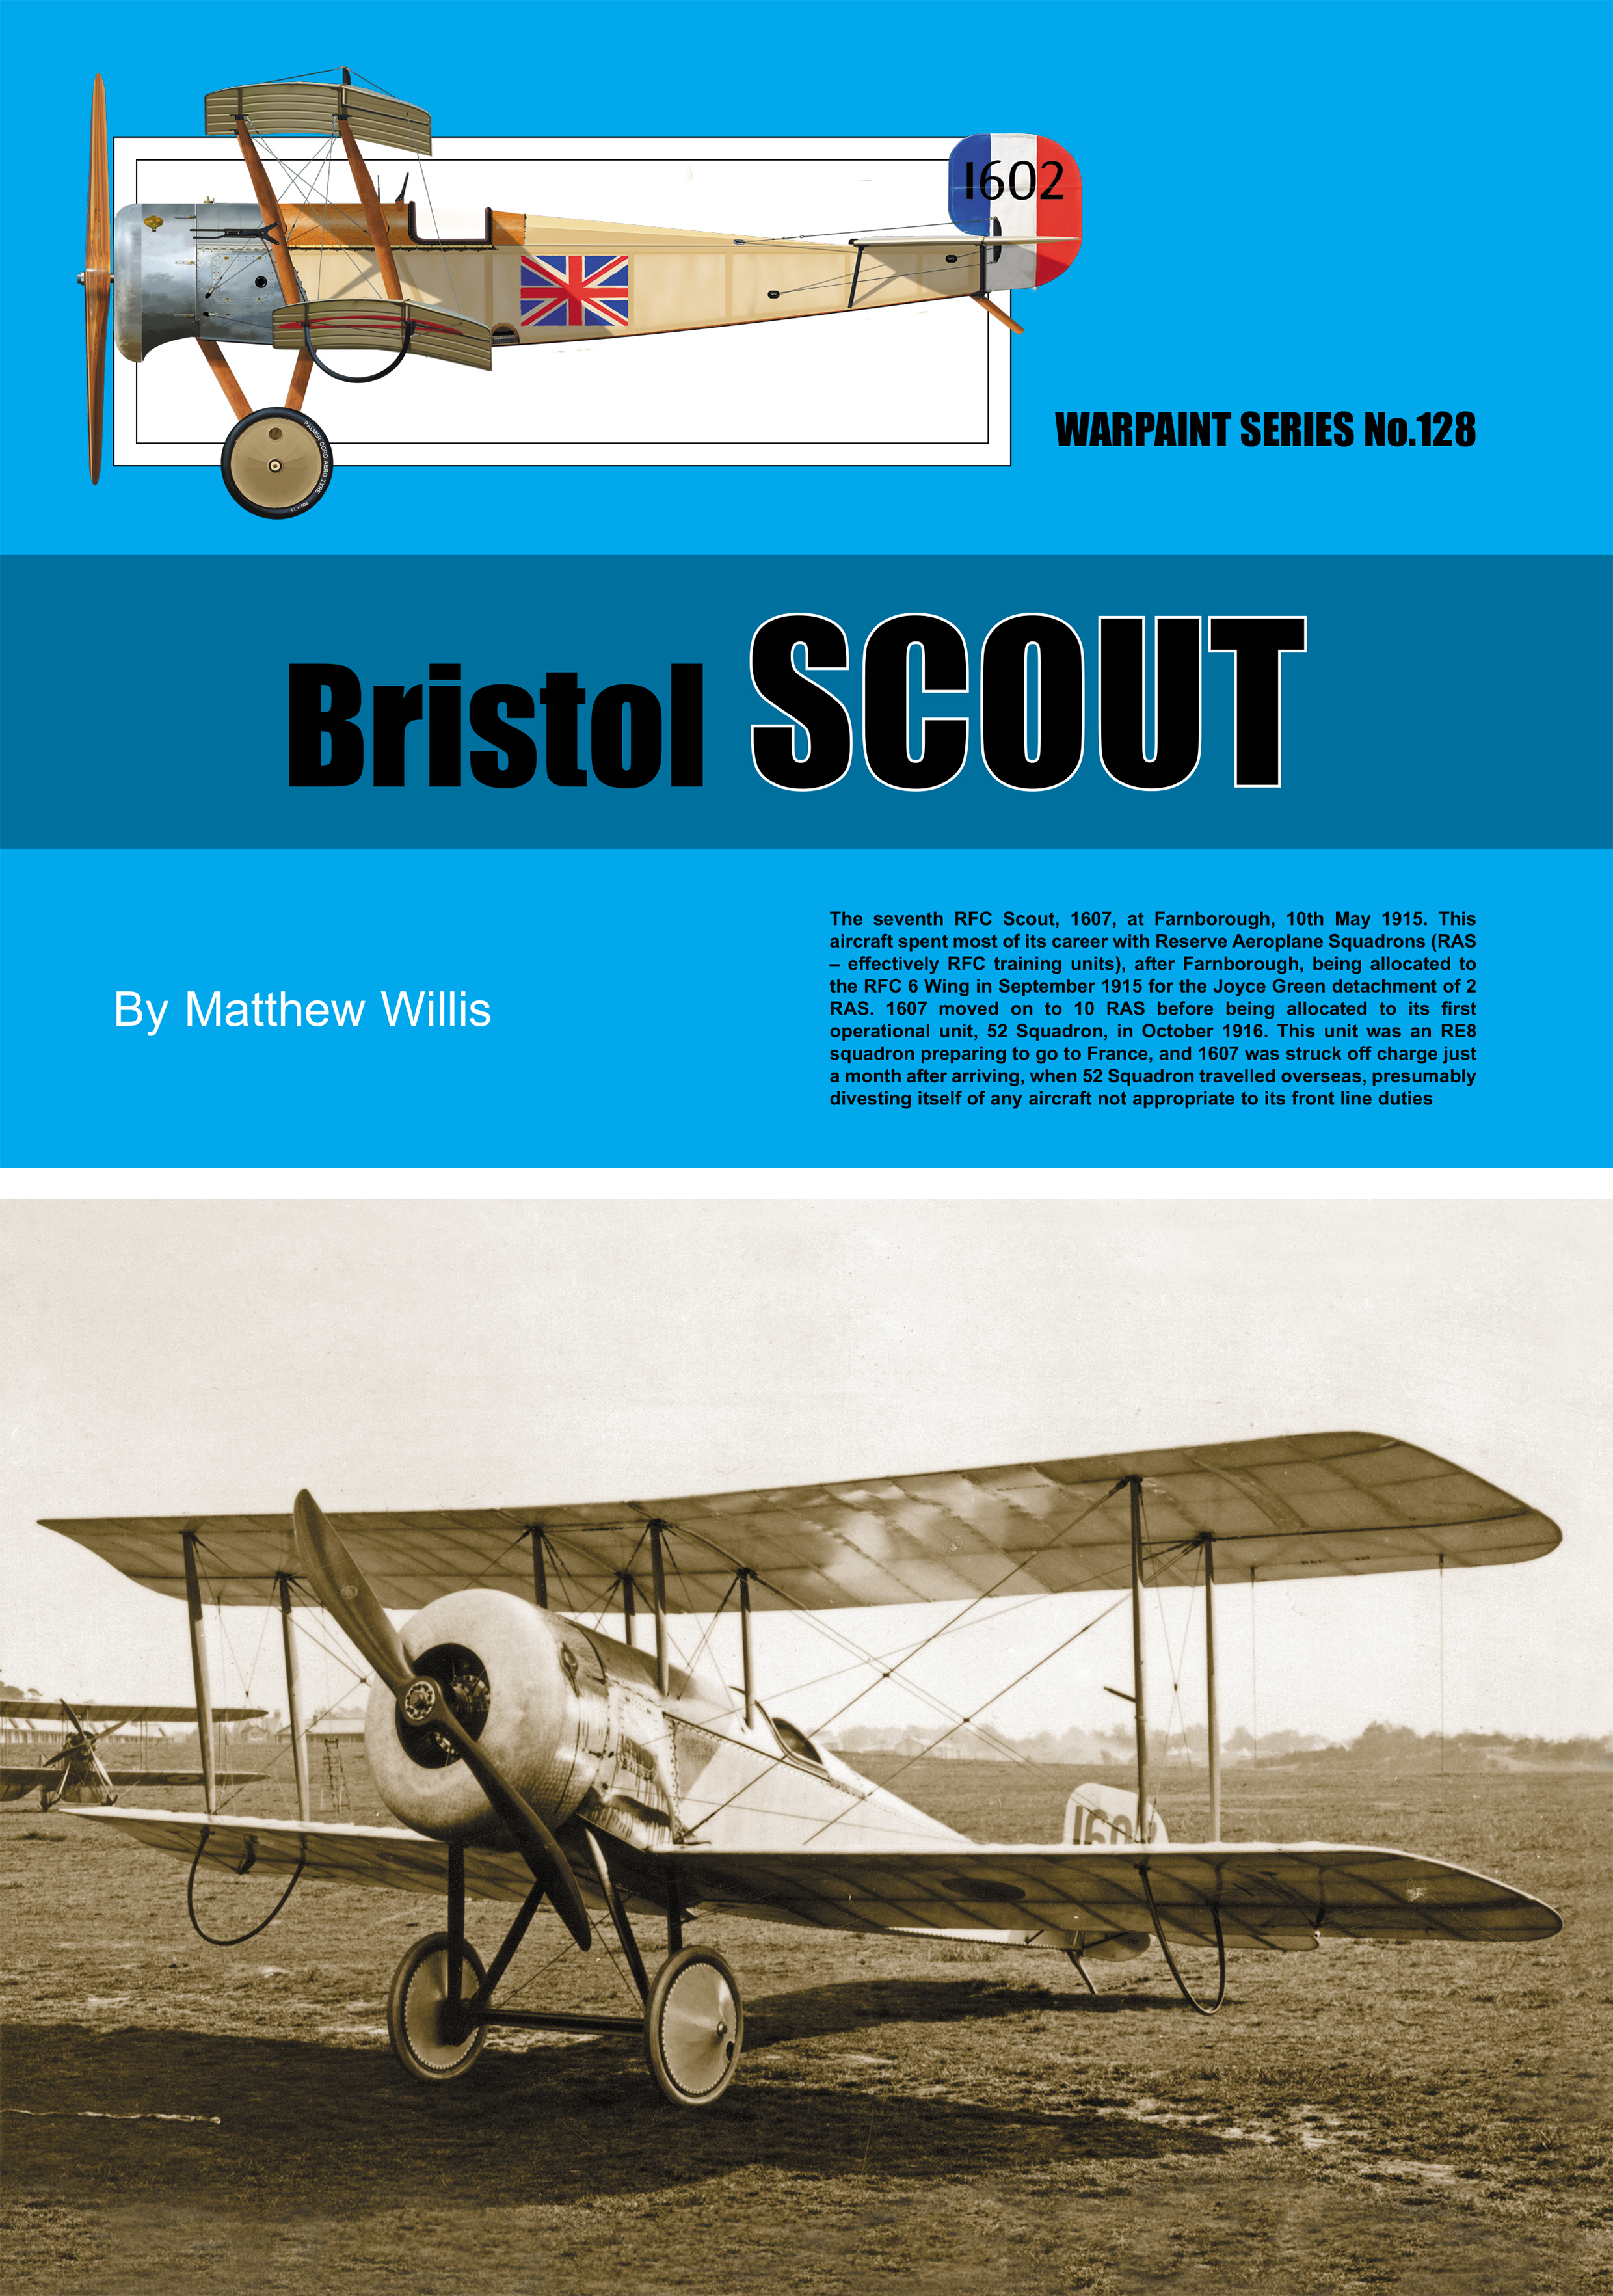 Guideline Publications Ltd 128 Bristol Scout Author Matthew Willis 